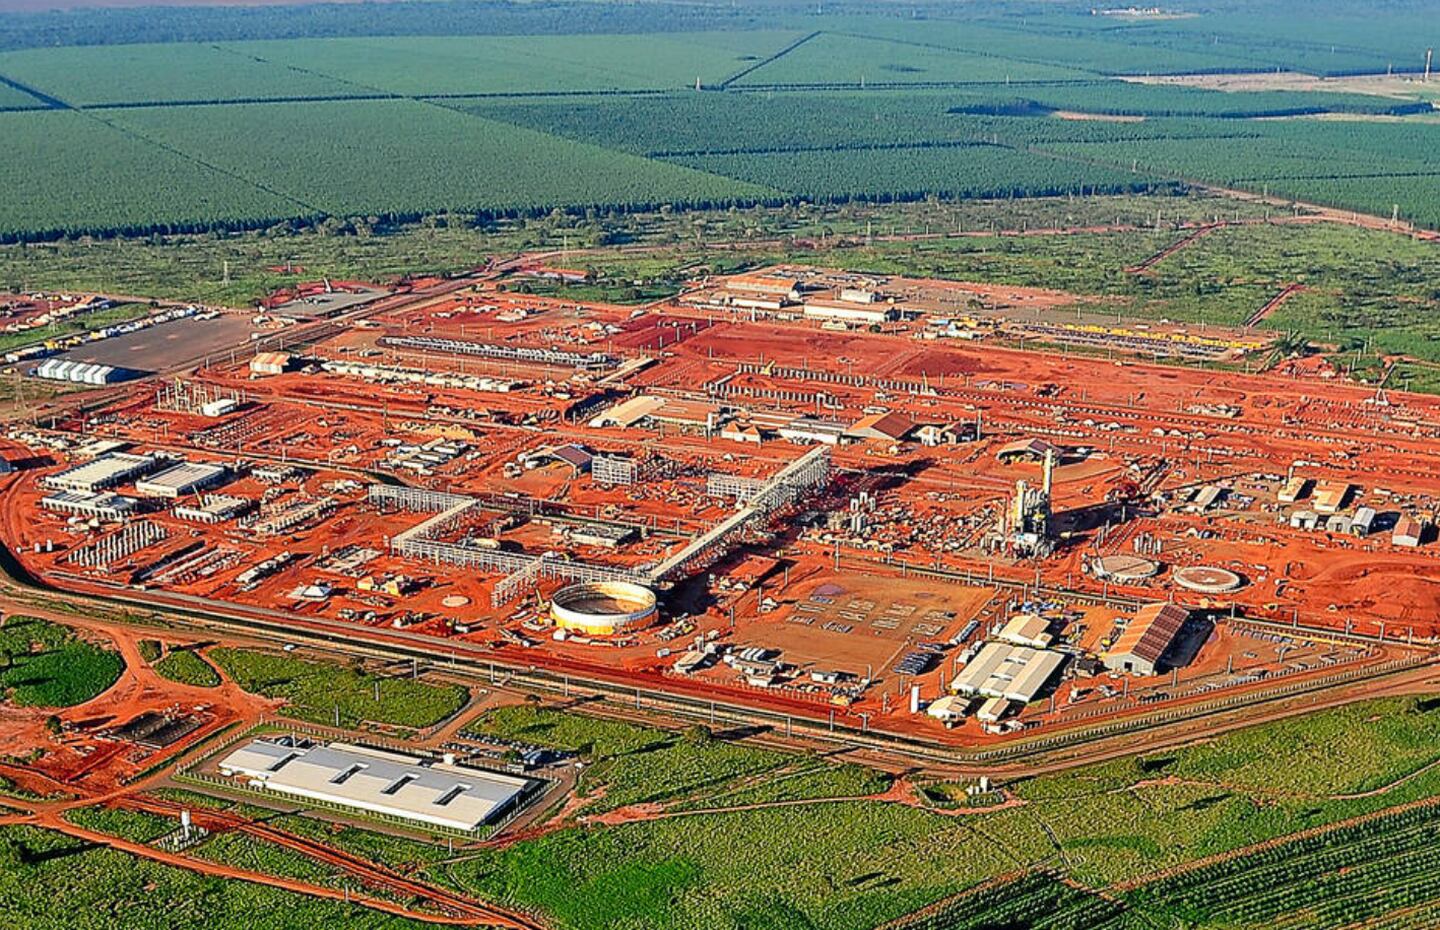 Planta da unidade de fertilizantes da Petrobras em Três Lagoas (MS): R$ 3,2 bilhões gastos antes de ser abandonada pela estatal, que mudou sua política de investimentos em 2016dfd